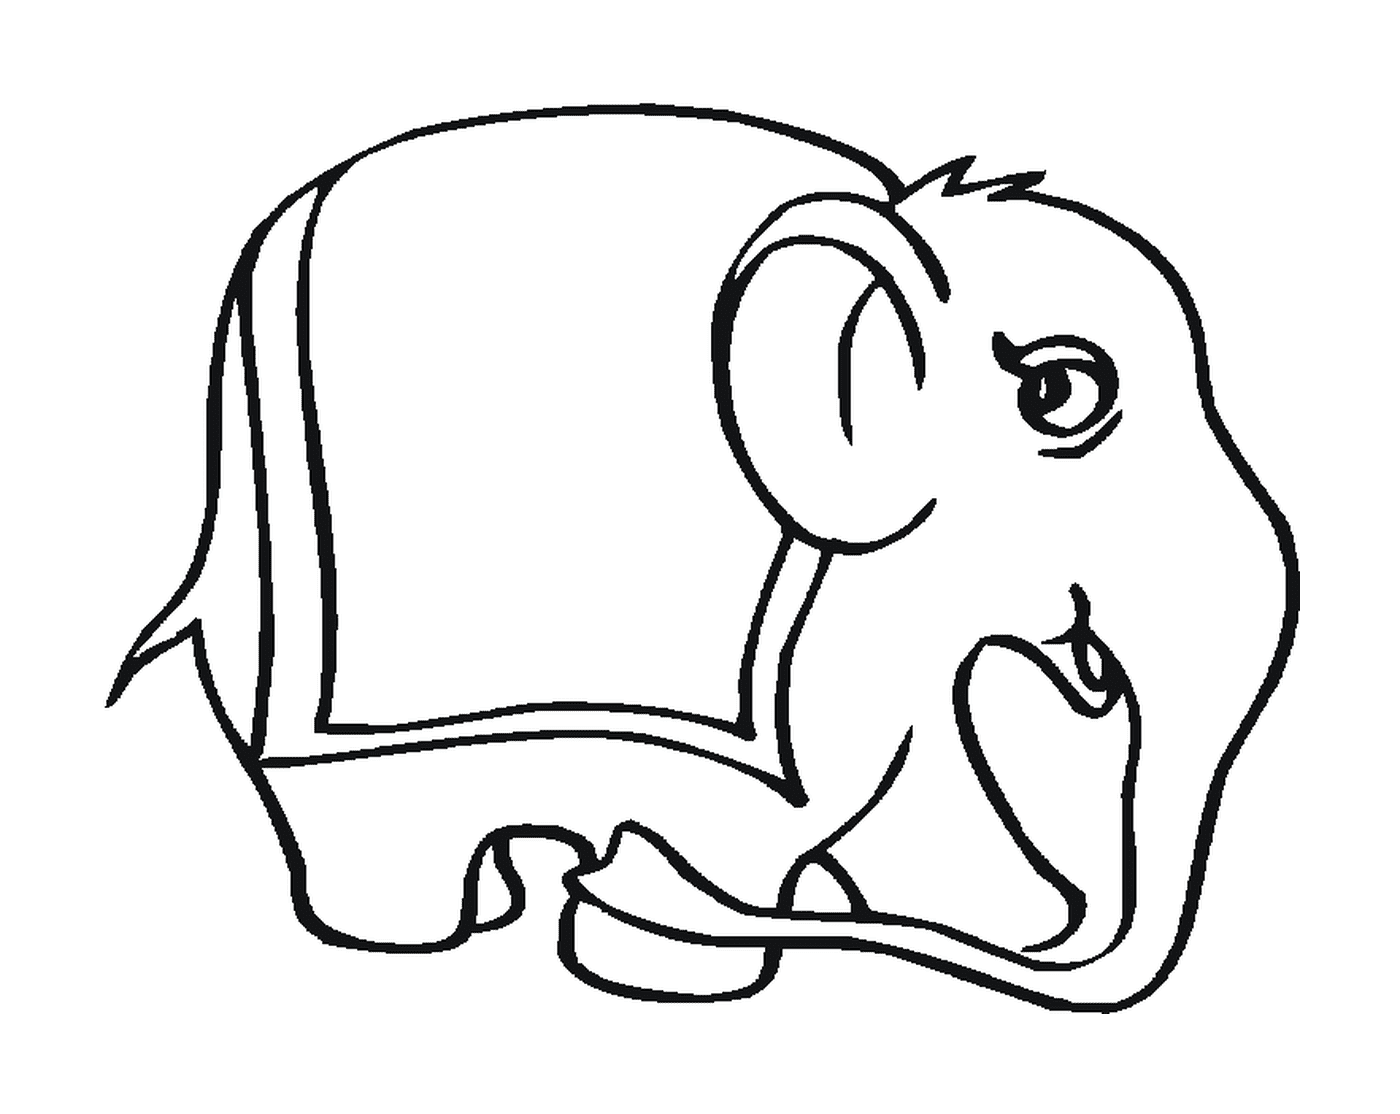  Un elefante con una silhouette seduta 